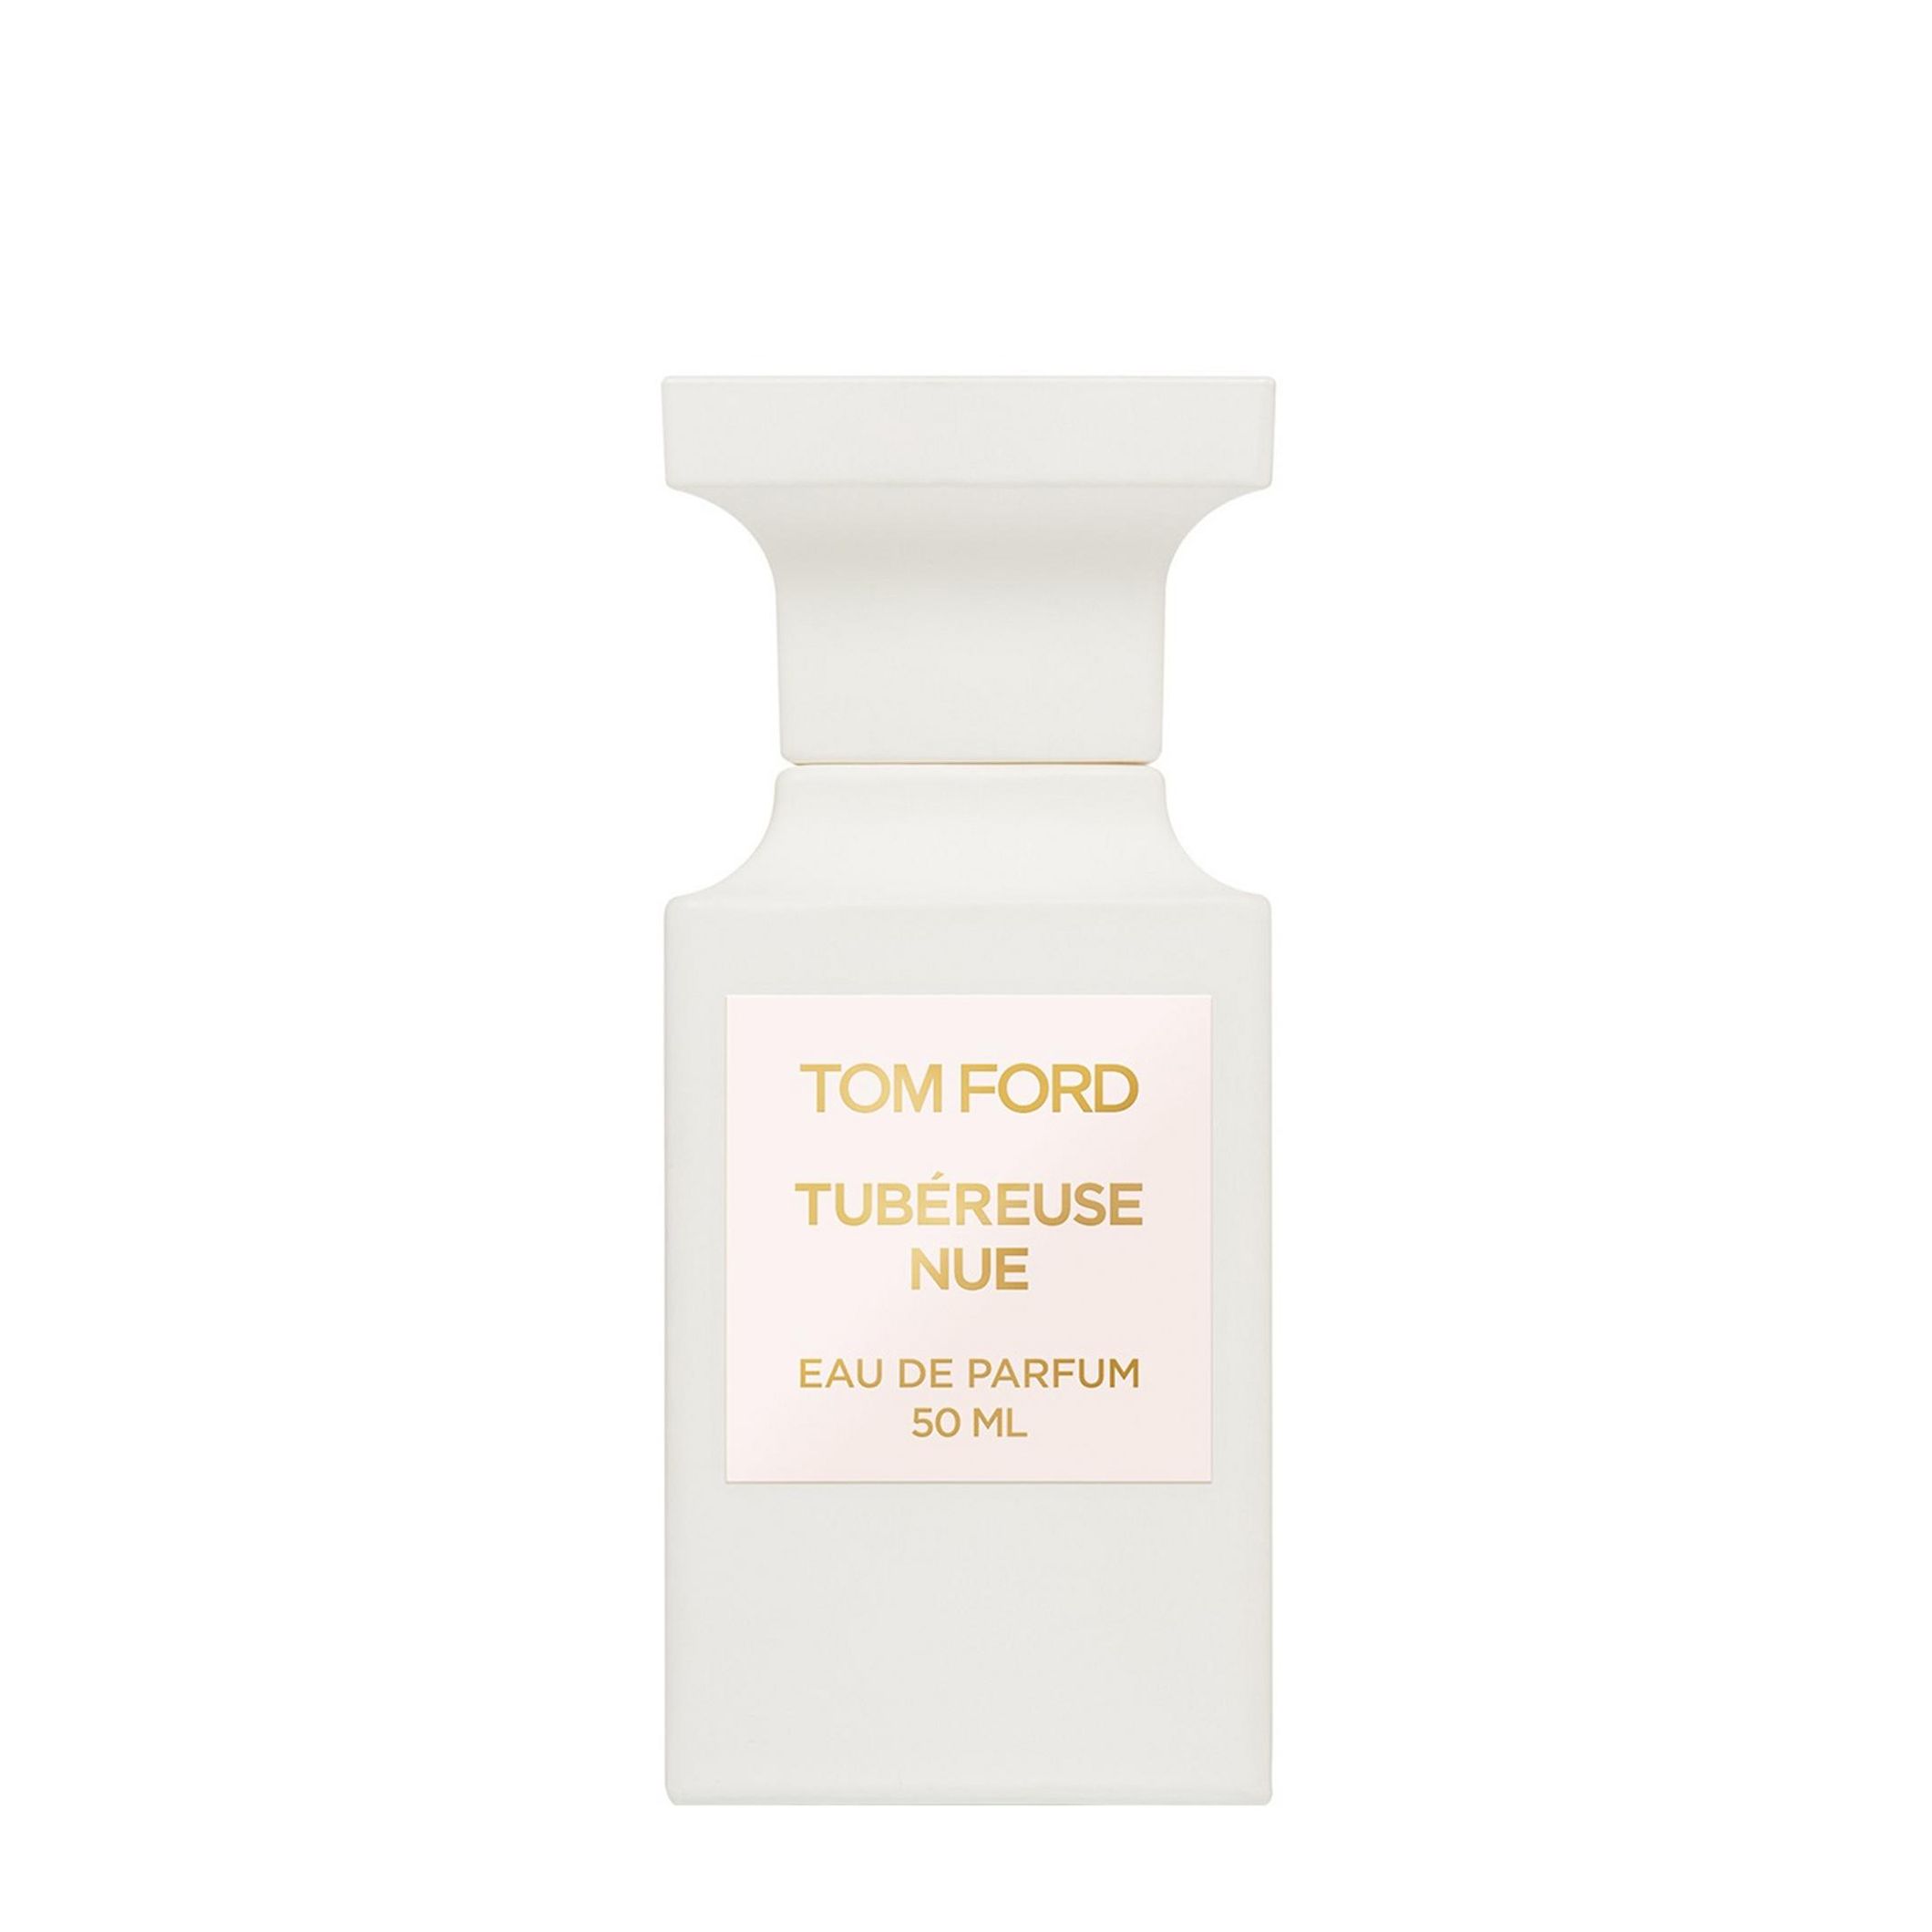 Вода парфюмерная Tom Ford Tubereuse Nue, унисекс, 50 мл tom ford tubereuse nue 100